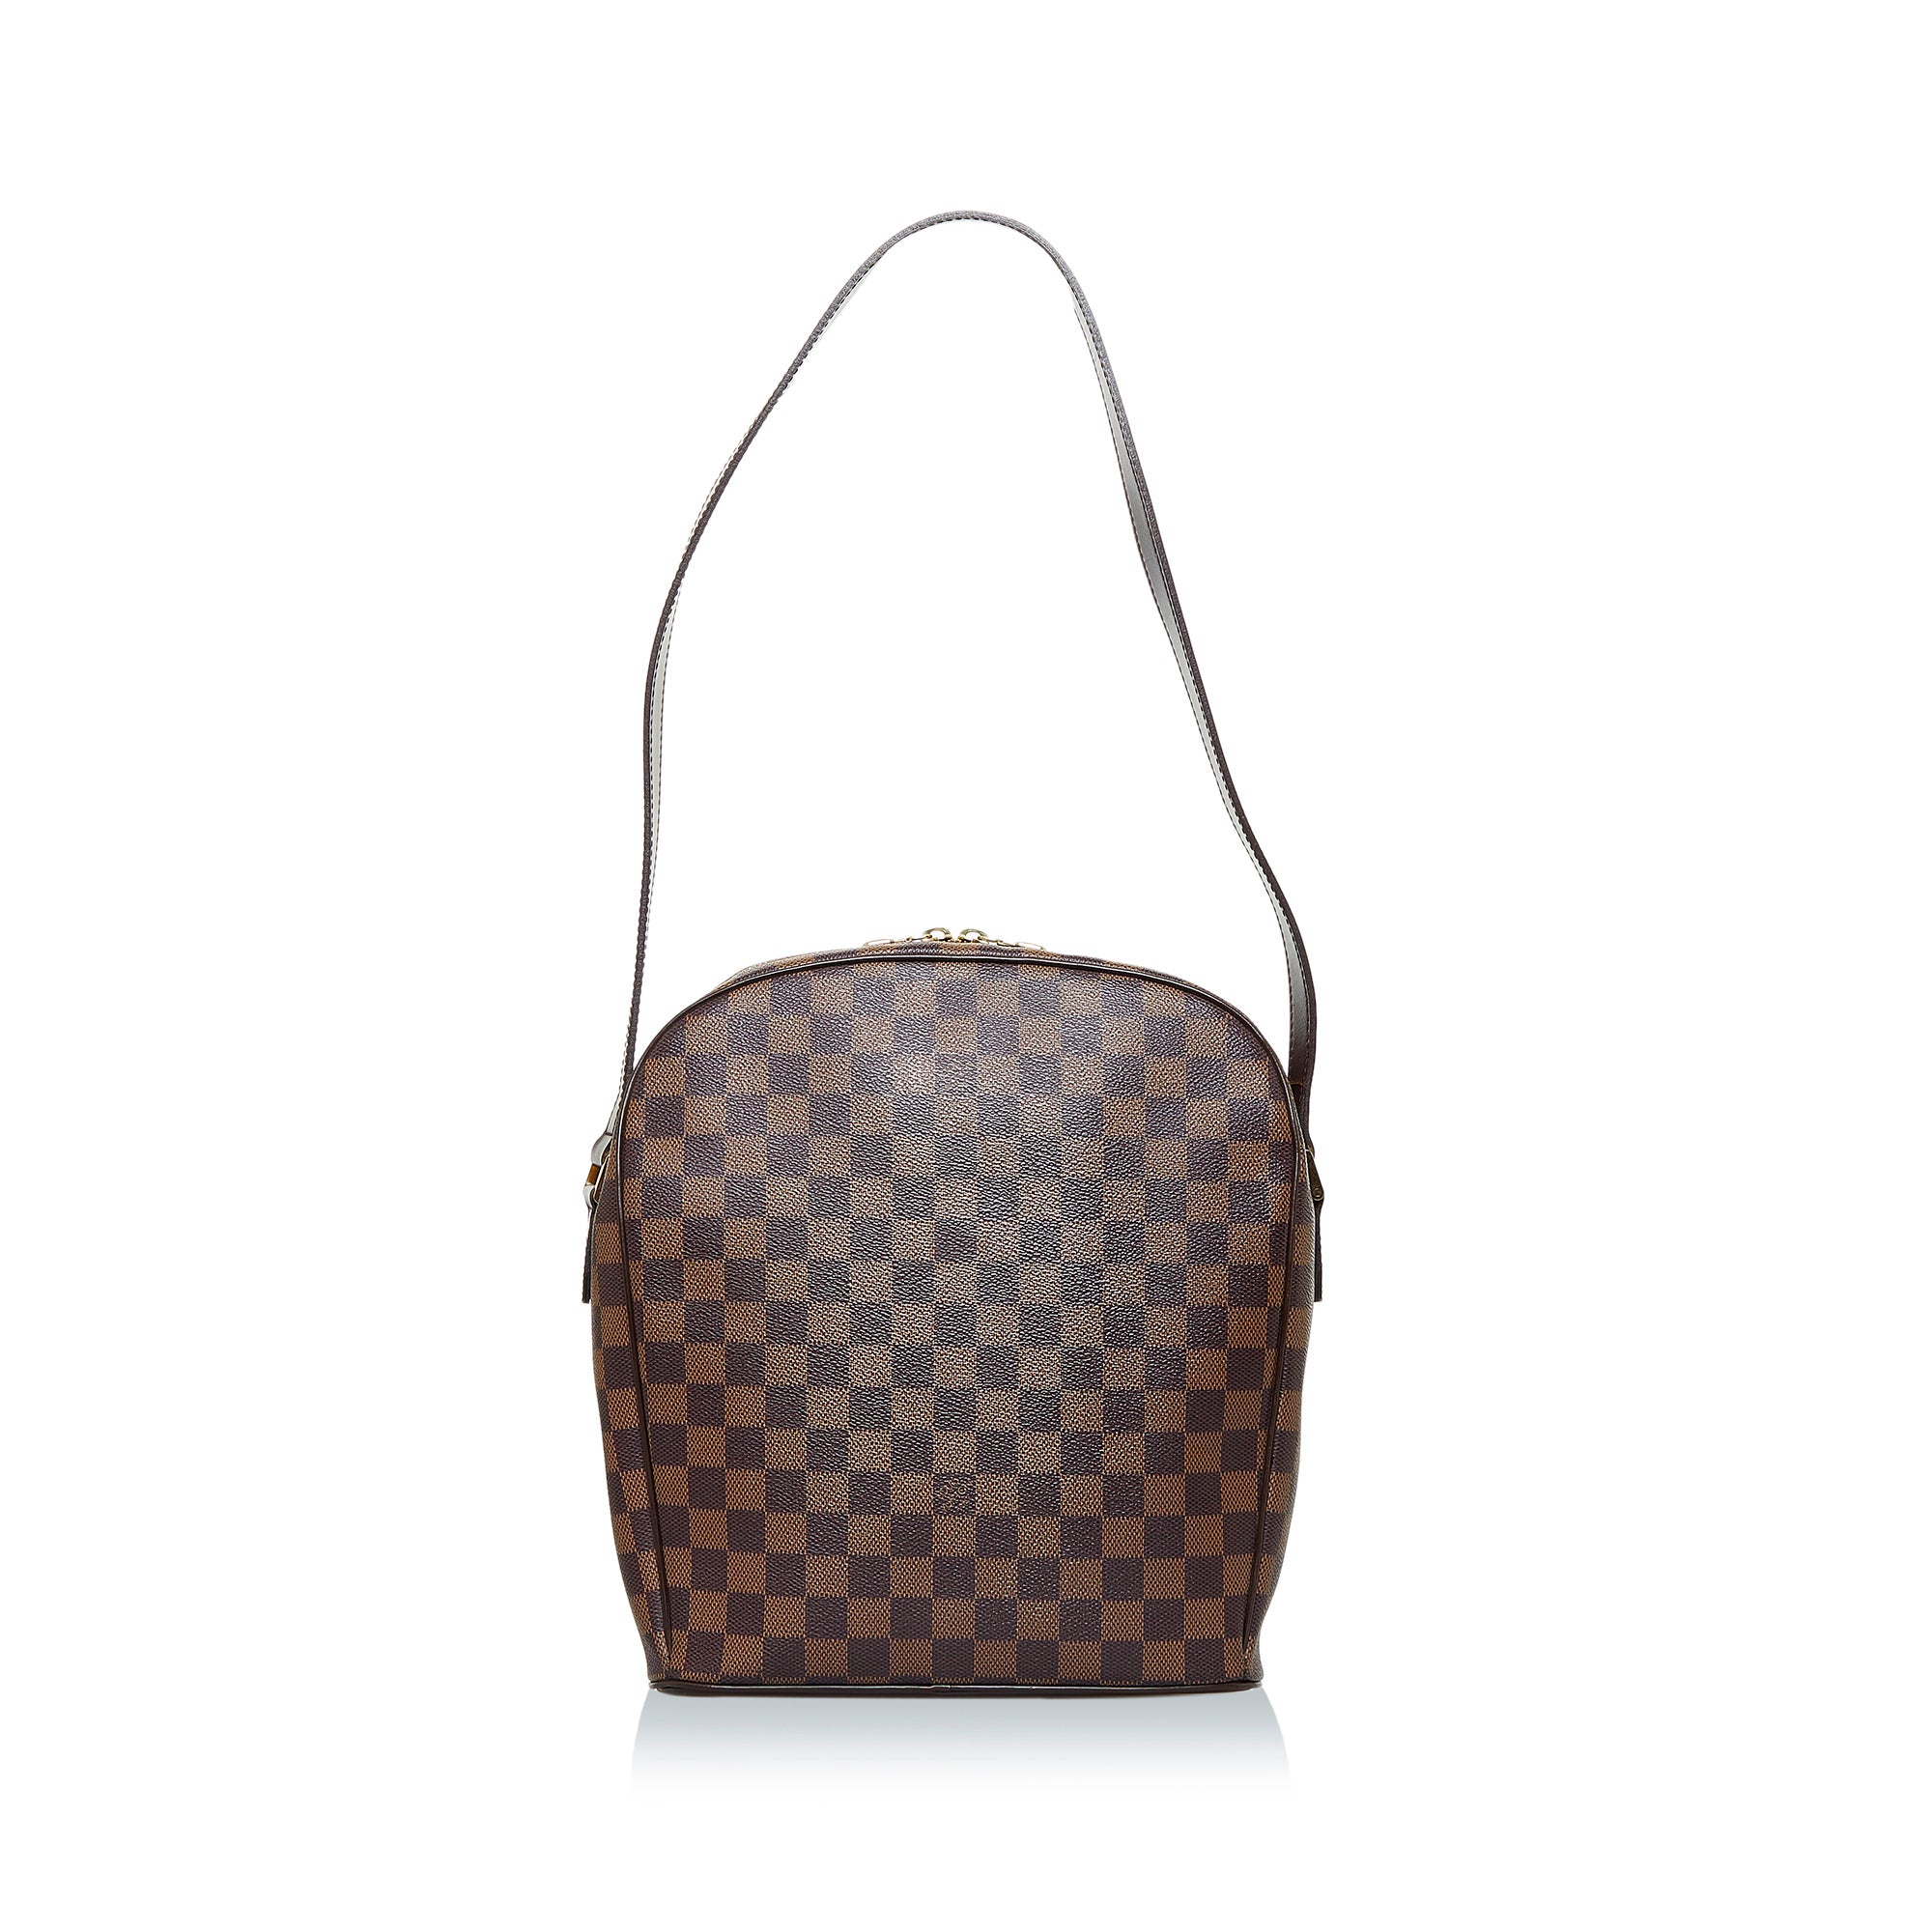 Louis Vuitton Bellevue Bag Review 